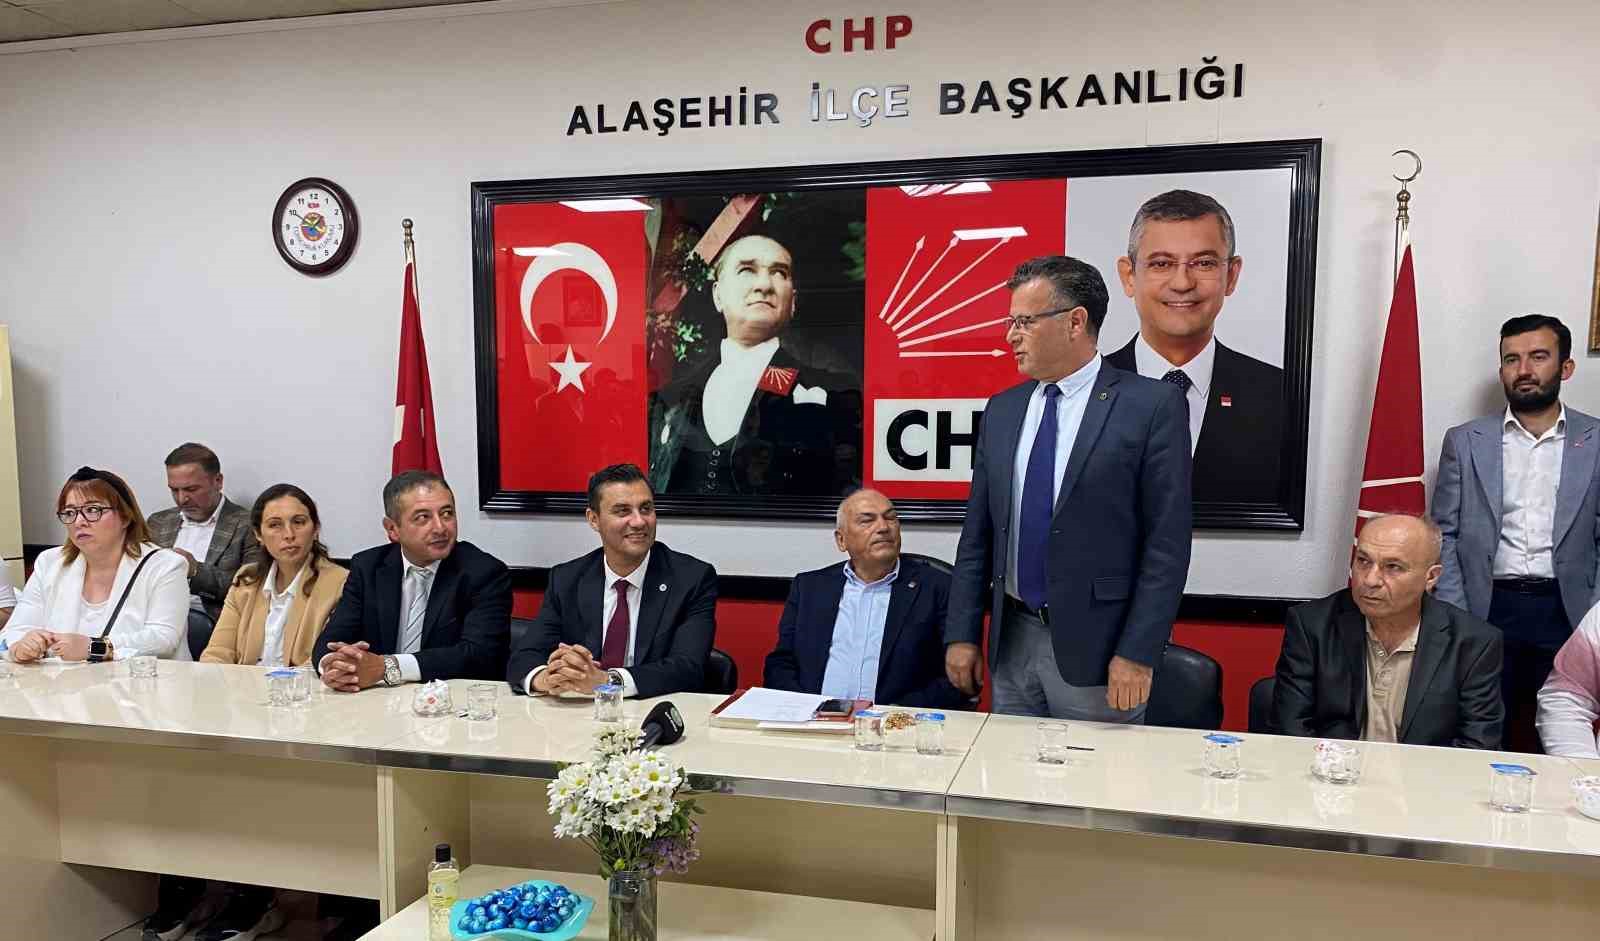 Alaşehir İYİ Parti İlçe Başkanı ve yönetiminden 8 kişi görevlerinden ve partiden istifa etti
